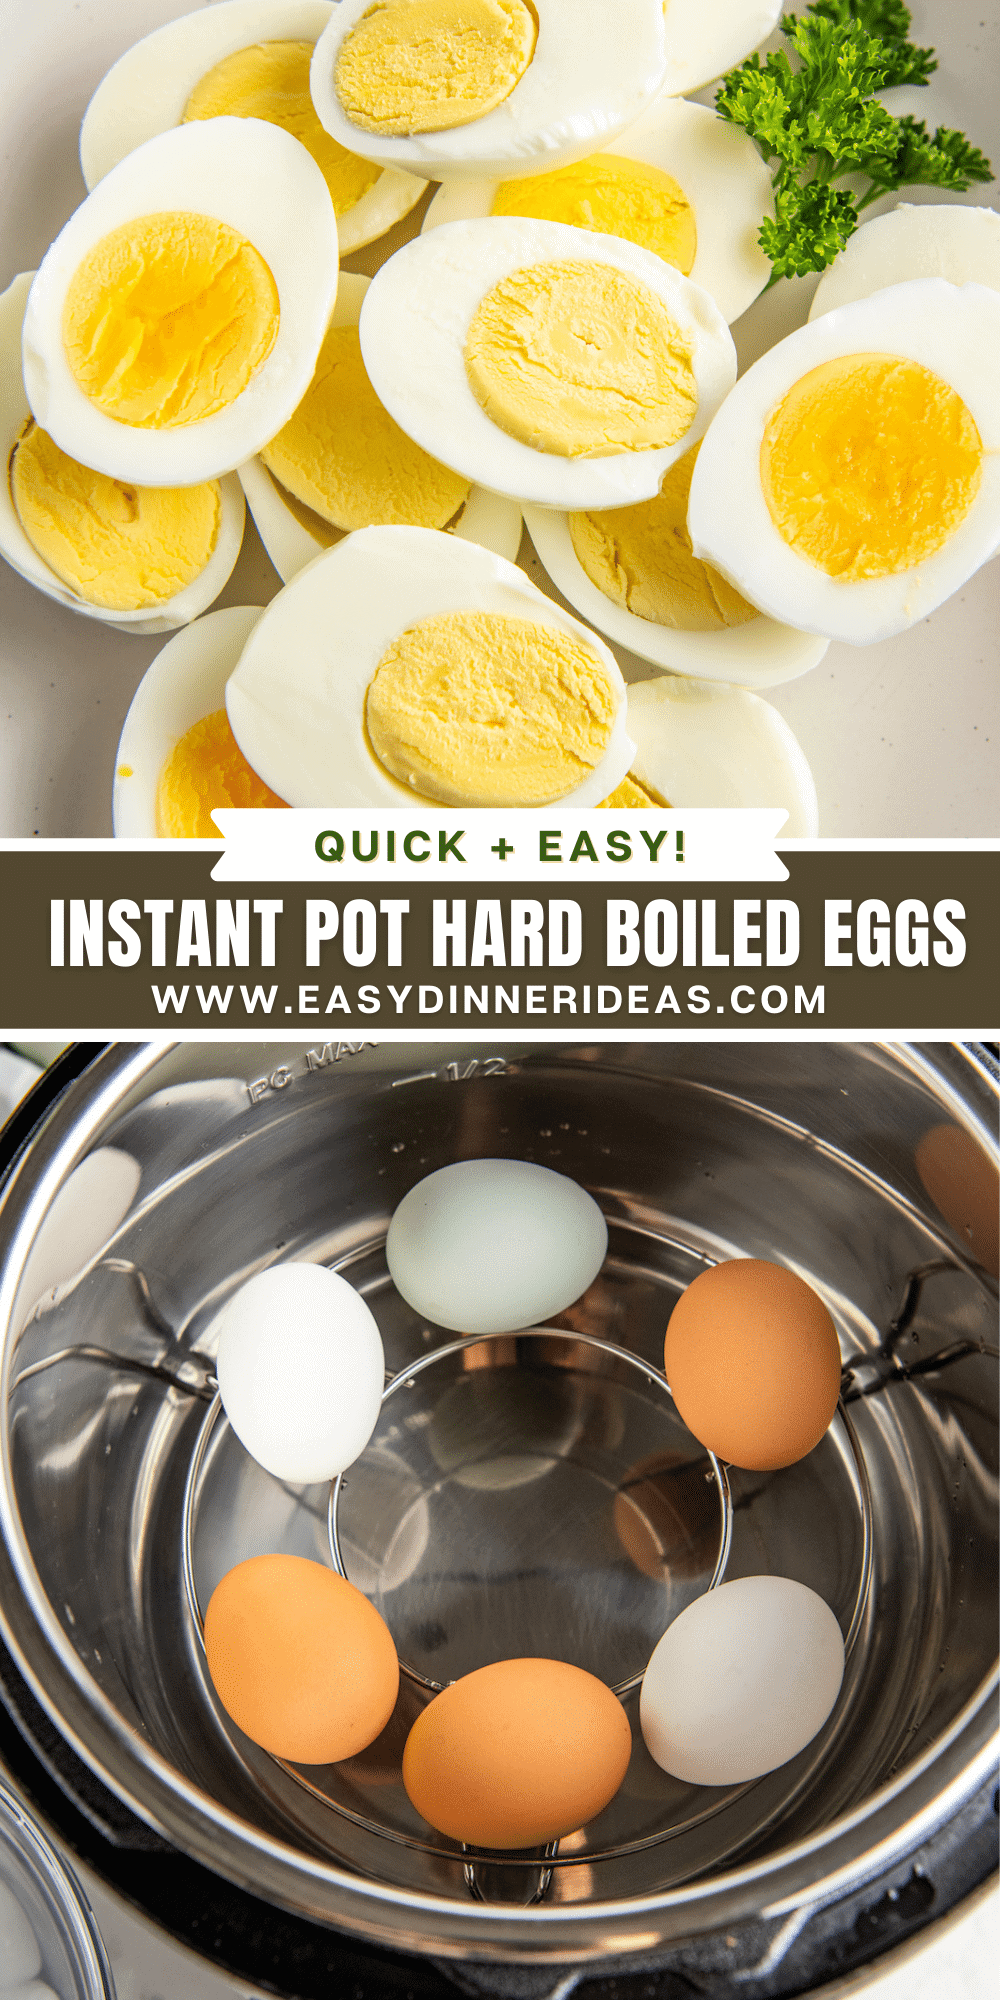 The Best Instant Pot Hard Boiled Eggs | Easy Dinner Ideas